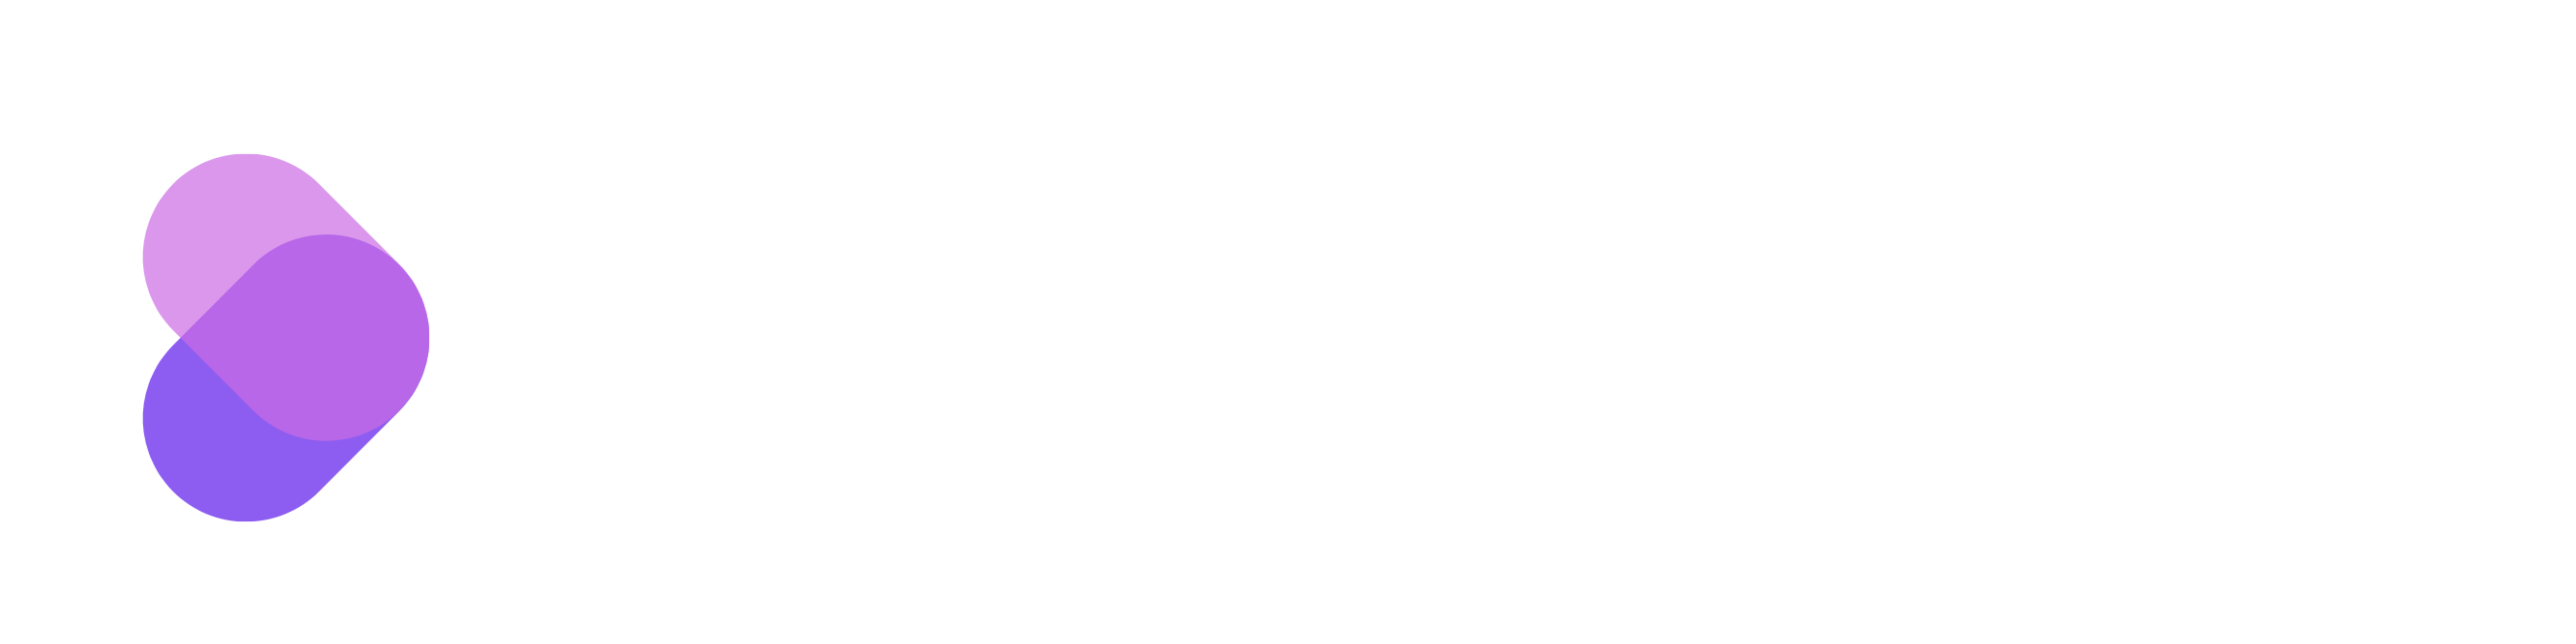 attachguard(200 × 50 cm) (200 × 87.503 cm)